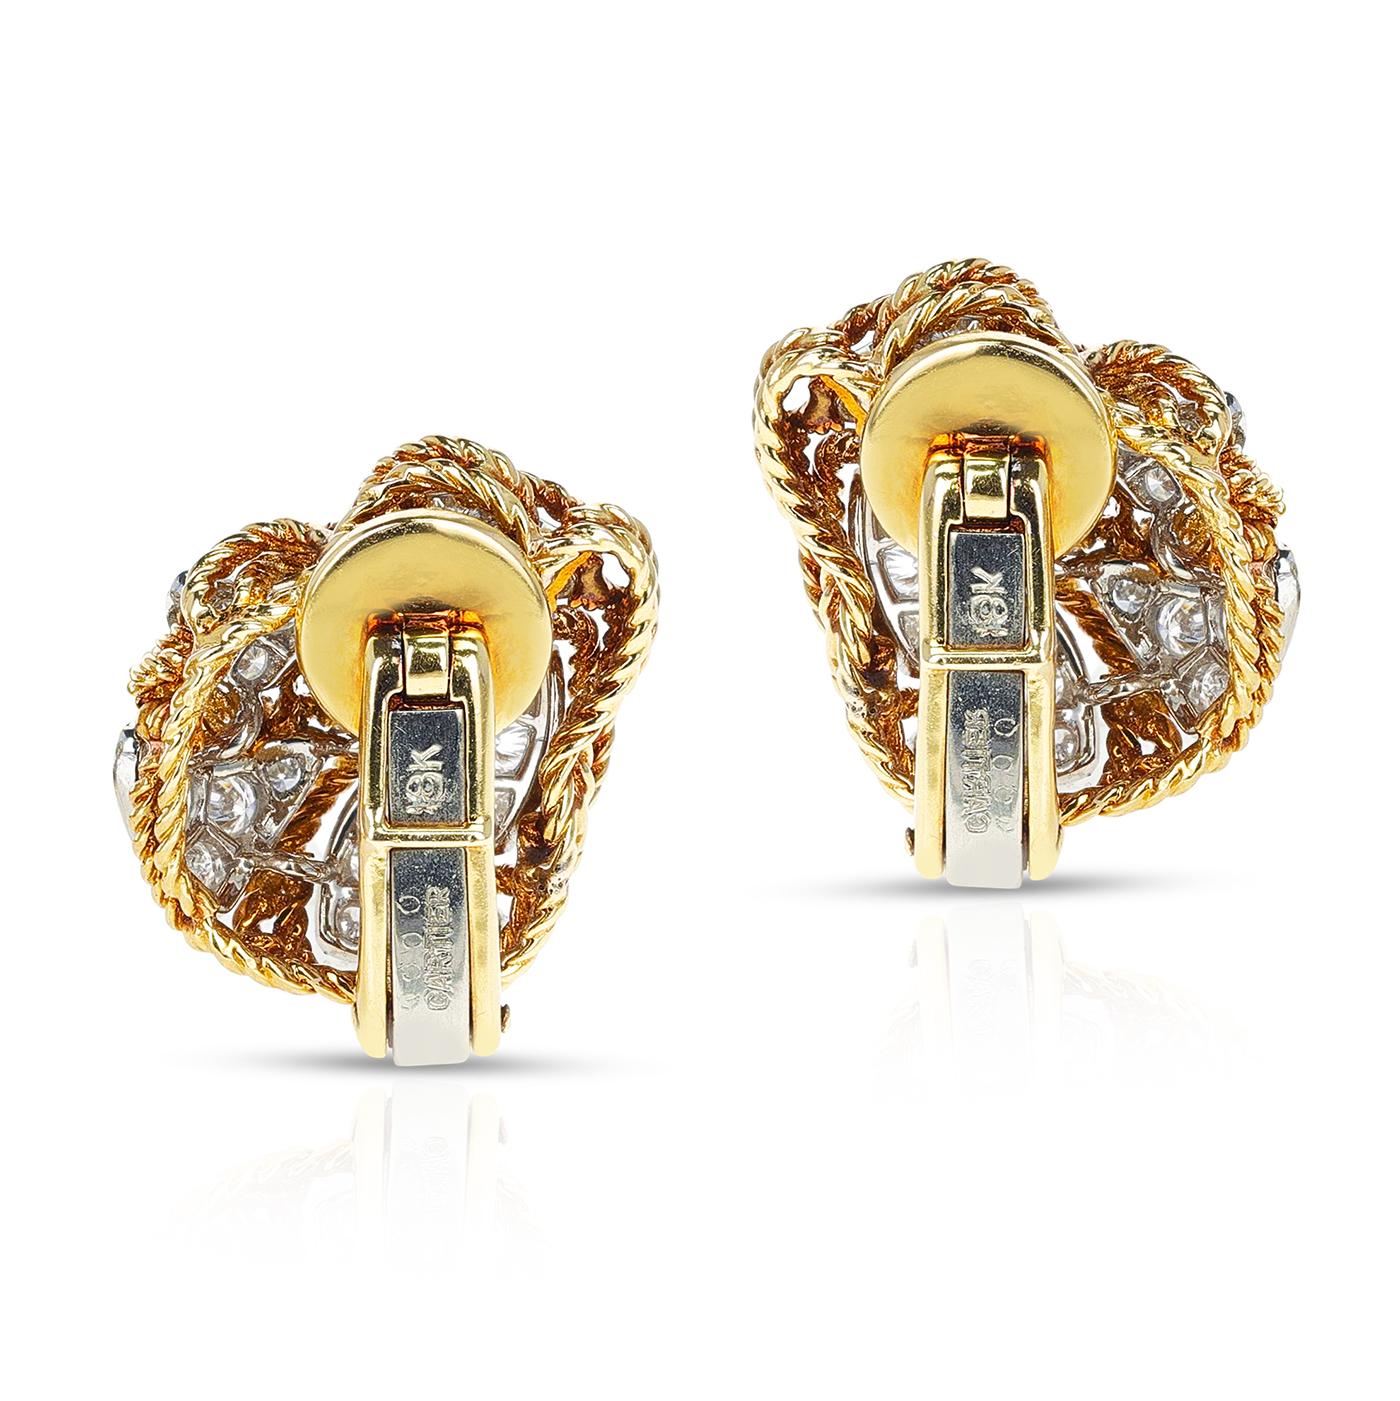 Une paire classique de boucles d'oreilles cocktail en diamant Cartier en or jaune 18 carats, fabriquée dans les années 1960. Les diamants pèsent environ 3,25 carats. Le poids total de la boucle d'oreille est de 20,53 grammes. La longueur de la